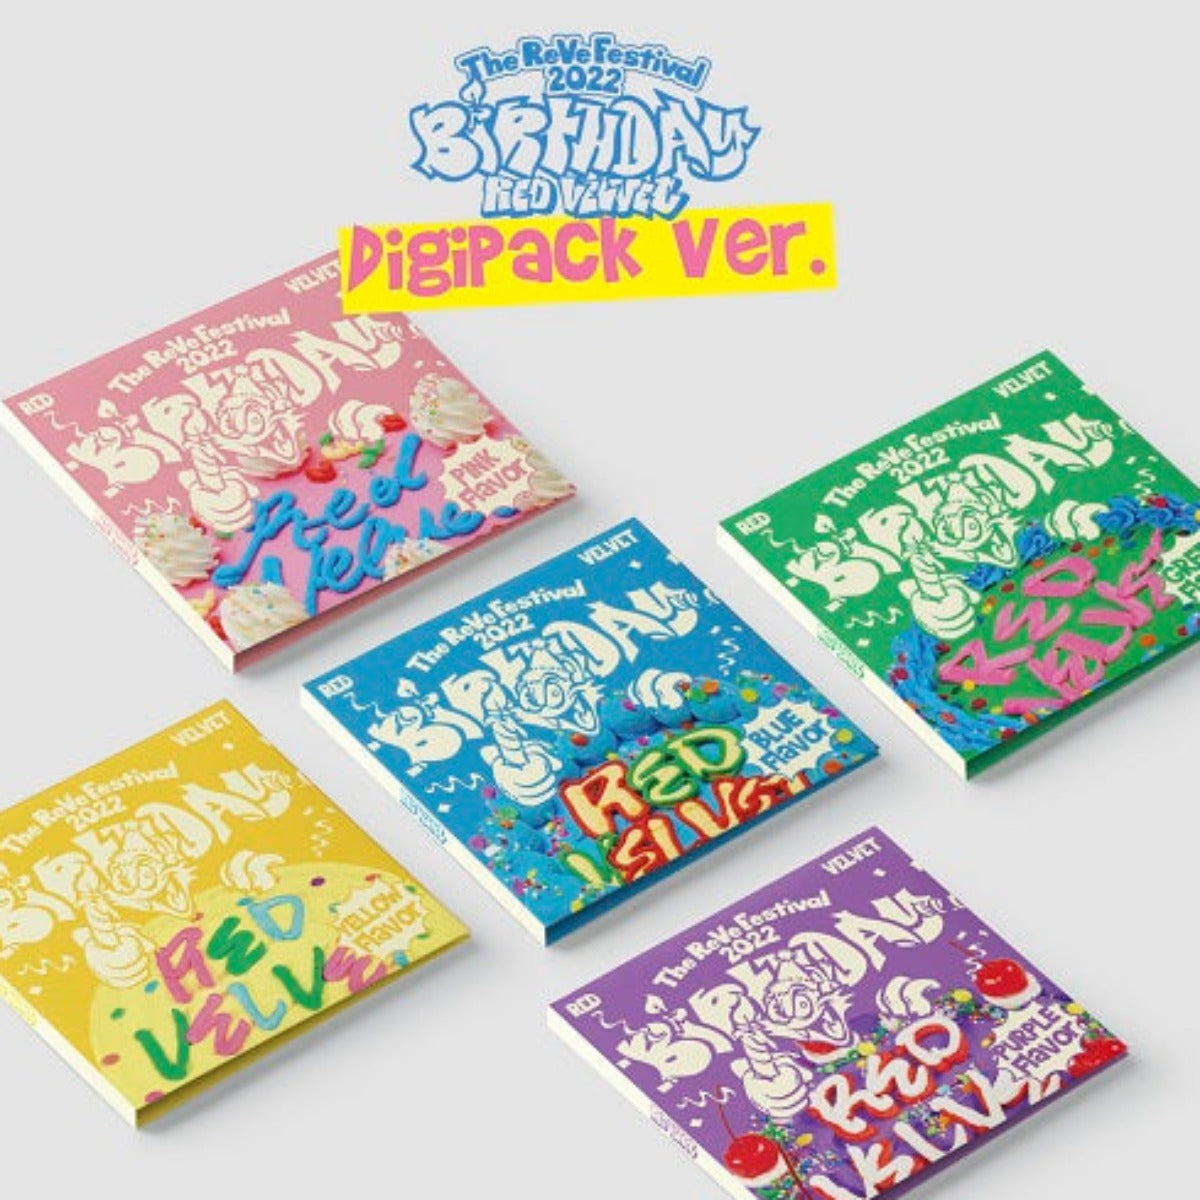 Red Velvet Mini Album Vol. 8 - The ReVe Festival 2022 - Birthday (Digipack Version) (Random Version)